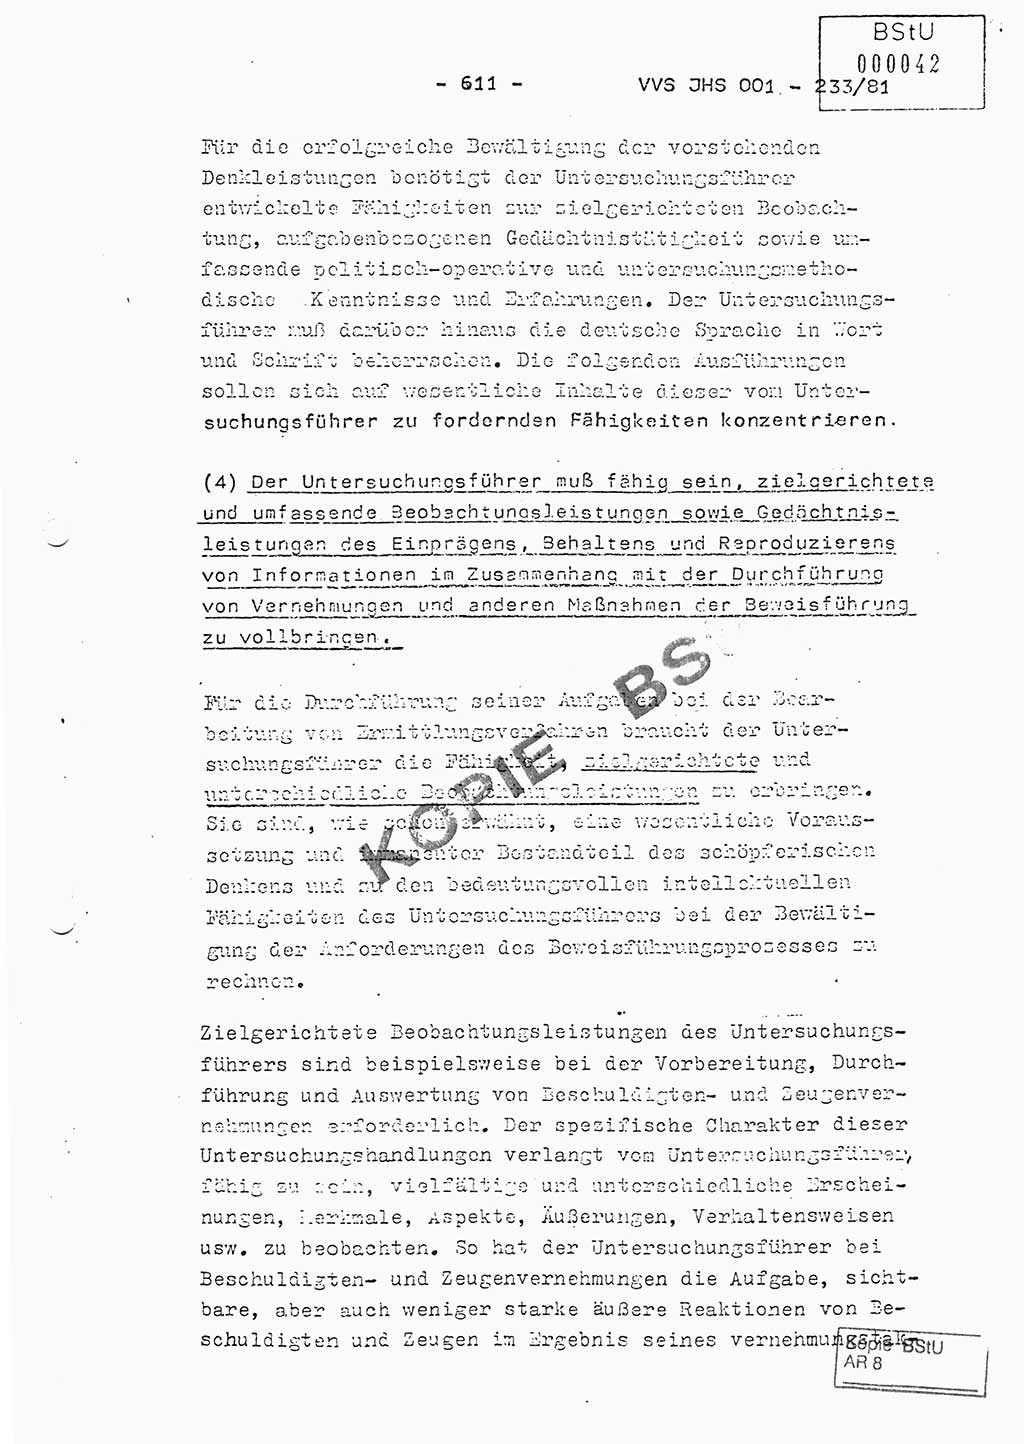 Dissertation Oberstleutnant Horst Zank (JHS), Oberstleutnant Dr. Karl-Heinz Knoblauch (JHS), Oberstleutnant Gustav-Adolf Kowalewski (HA Ⅸ), Oberstleutnant Wolfgang Plötner (HA Ⅸ), Ministerium für Staatssicherheit (MfS) [Deutsche Demokratische Republik (DDR)], Juristische Hochschule (JHS), Vertrauliche Verschlußsache (VVS) o001-233/81, Potsdam 1981, Blatt 611 (Diss. MfS DDR JHS VVS o001-233/81 1981, Bl. 611)